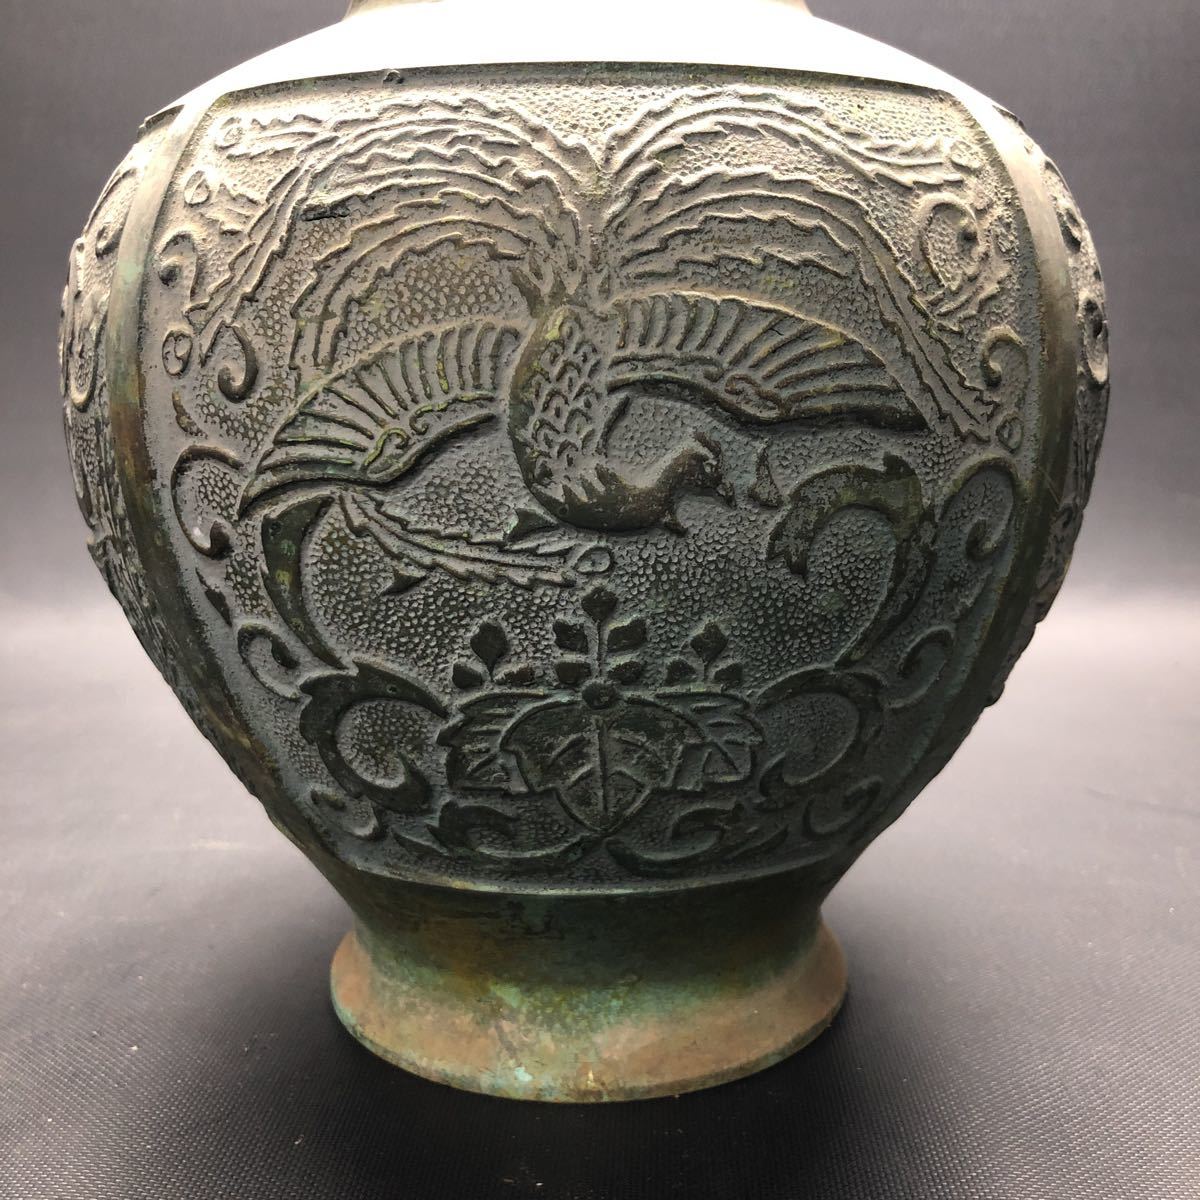 ダイゾー ナチュラル 鋳銅 金属製の花瓶、壺、鋳造品 皇室御用達 